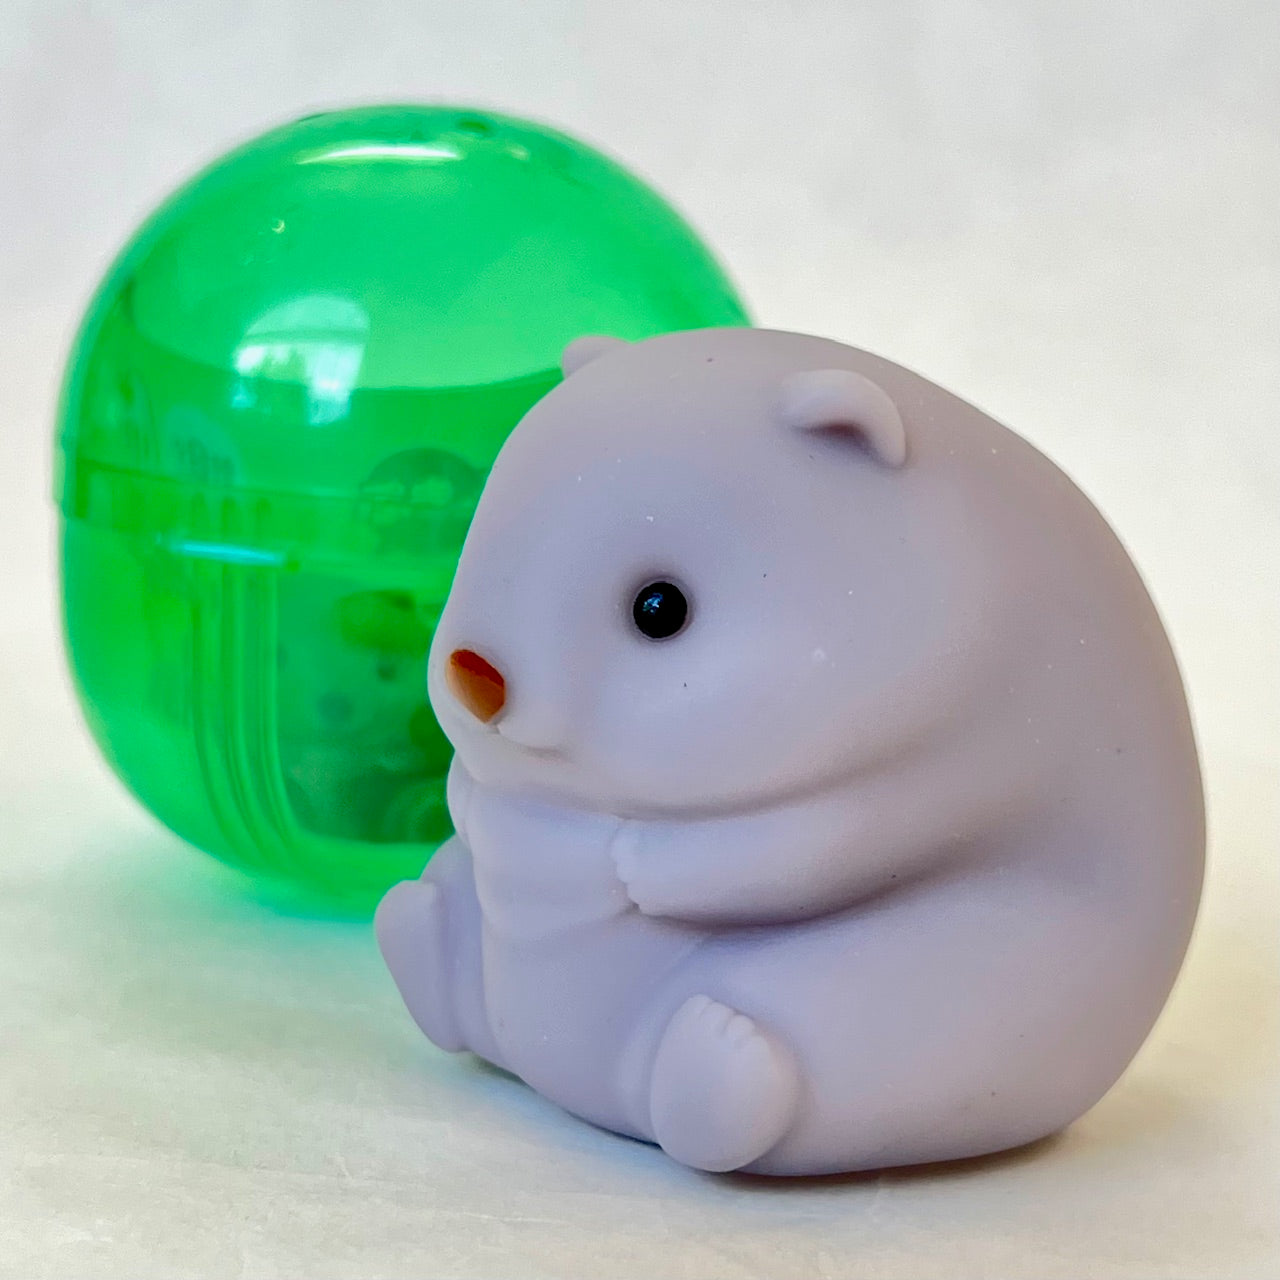 70302 Soft Wombat Figurines Capsule-8